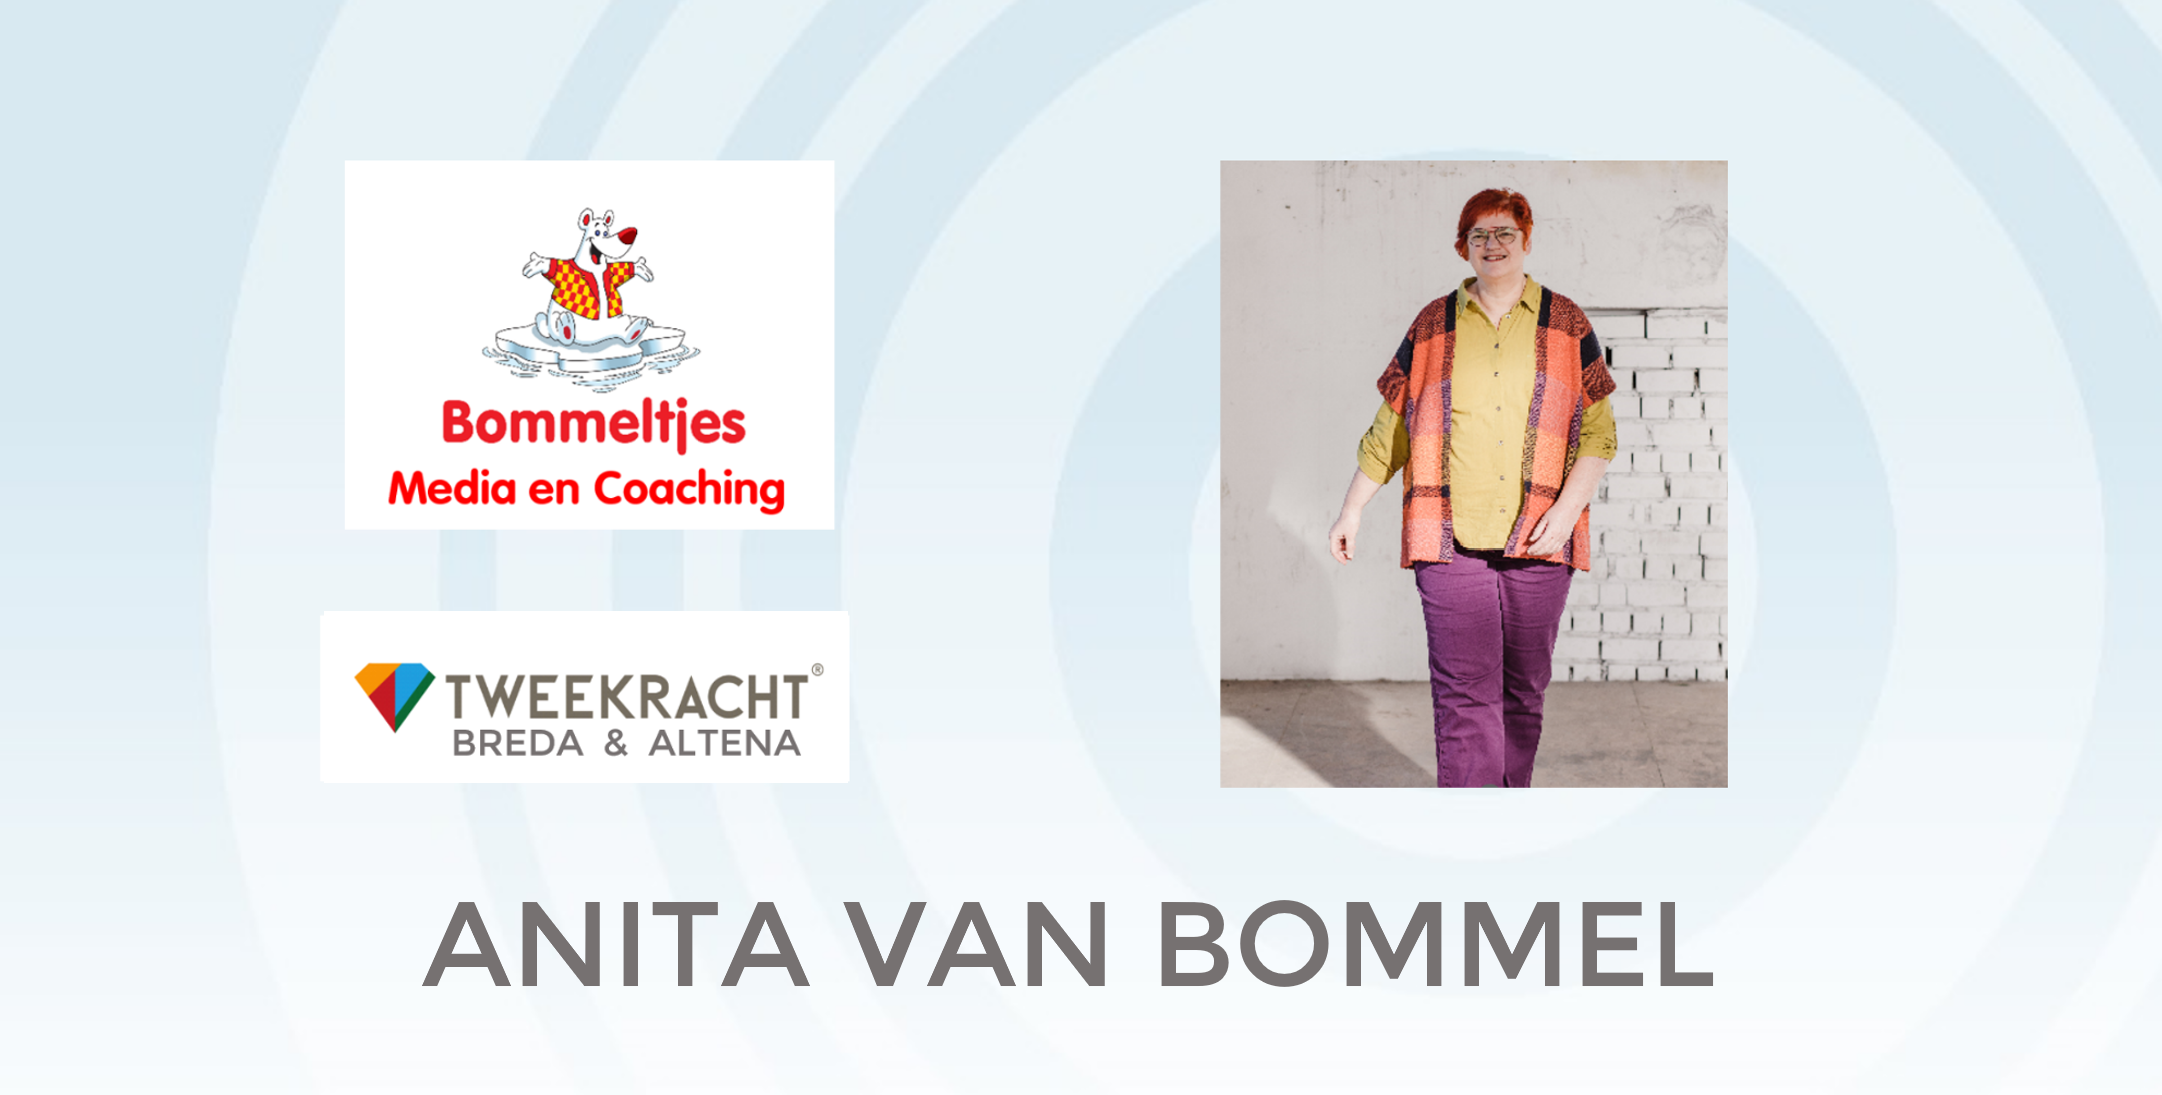 Anita van Bommel